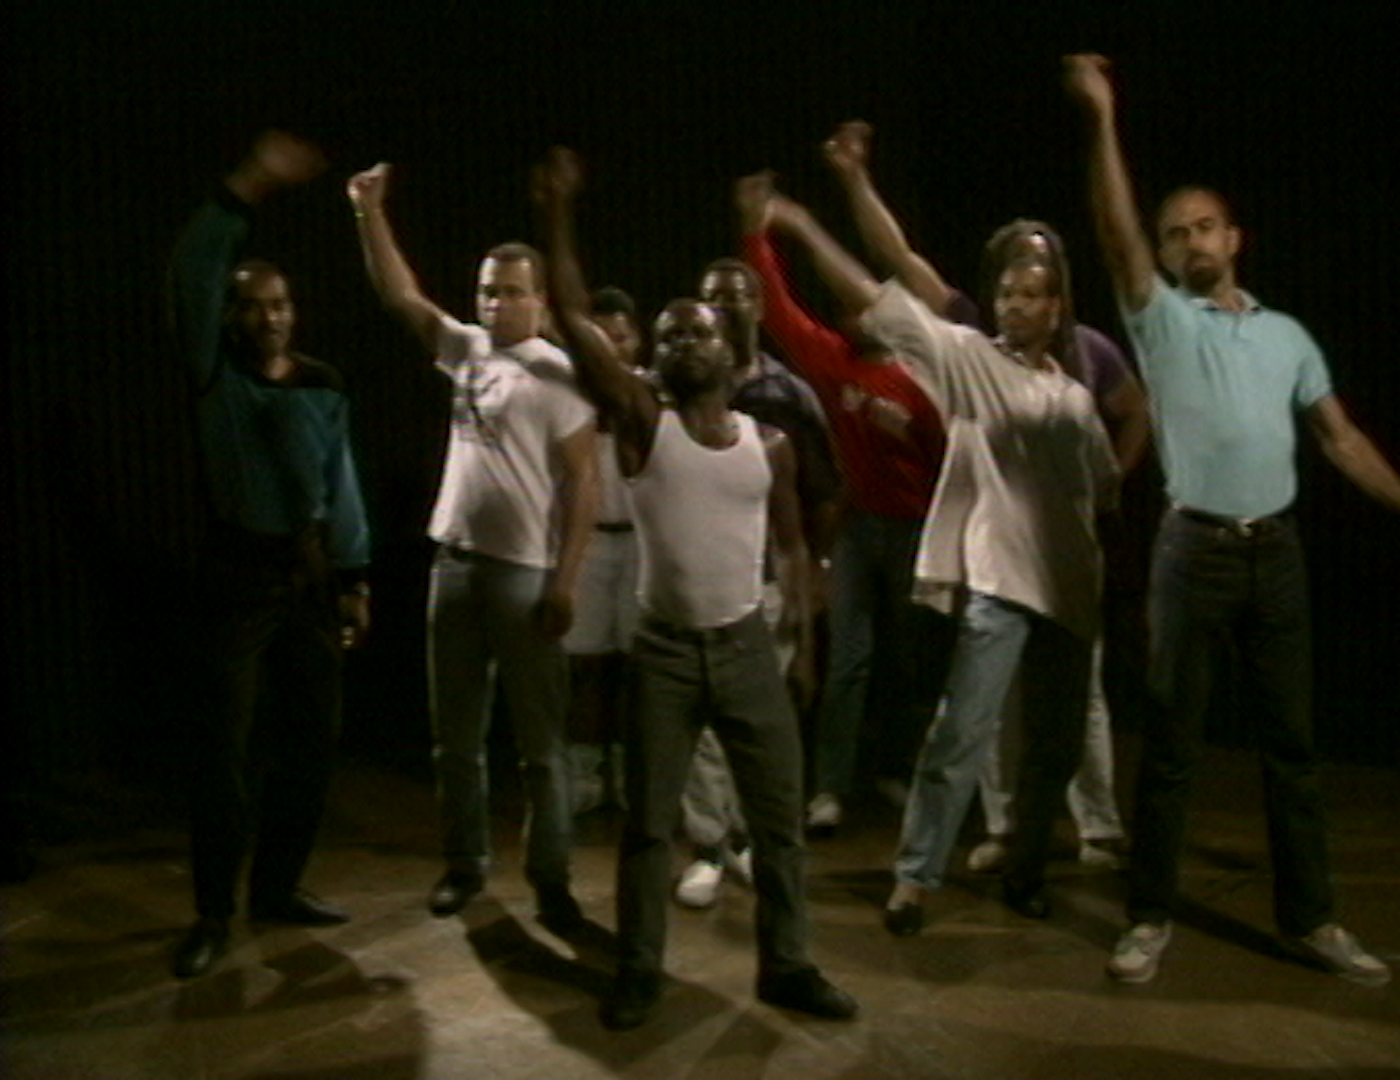 Foto de um grupo de pessoas em pé, com um homem negro ao centro, todos com a mão direita levantada e punhos cerrados.